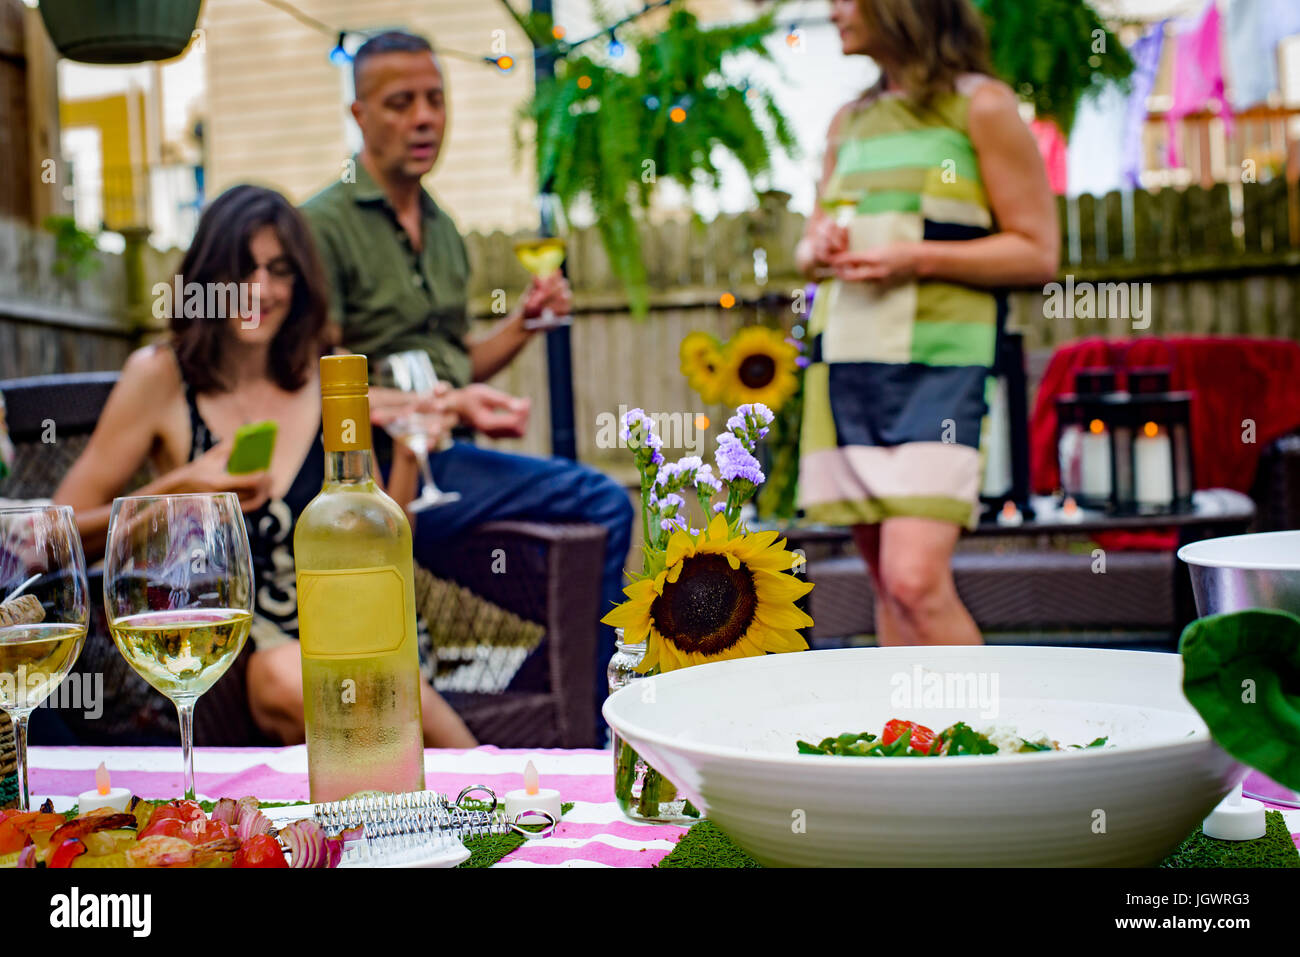 Gruppe von Menschen auf Gartenparty, hält Gläser Wein, Flasche Wein und Essen auf Servierplatten im Vordergrund Stockfoto